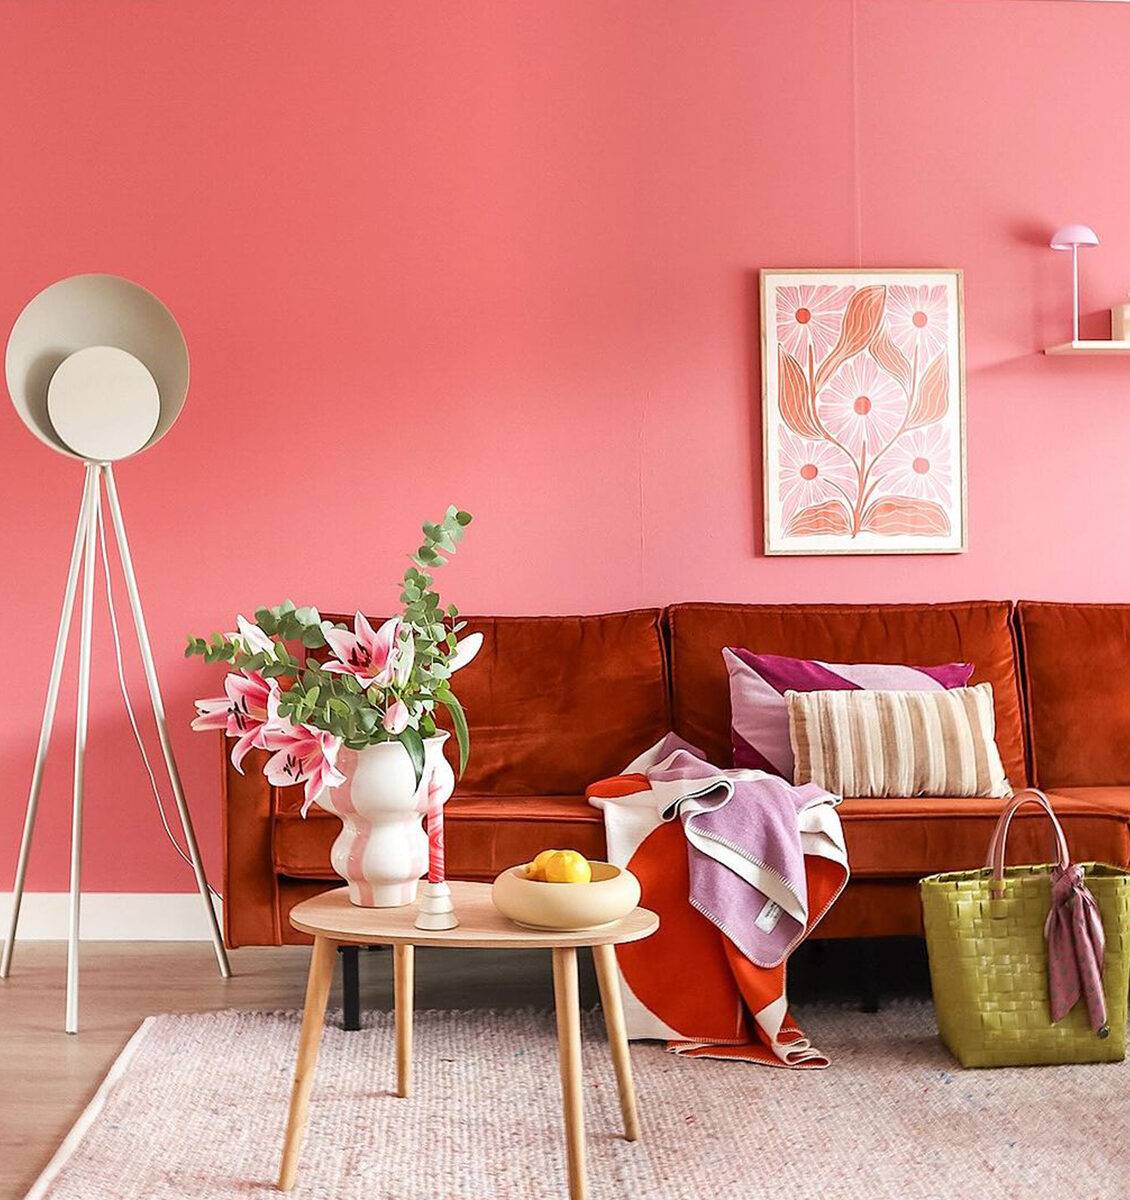 NL lijst aan fel roze muur in woonkamer